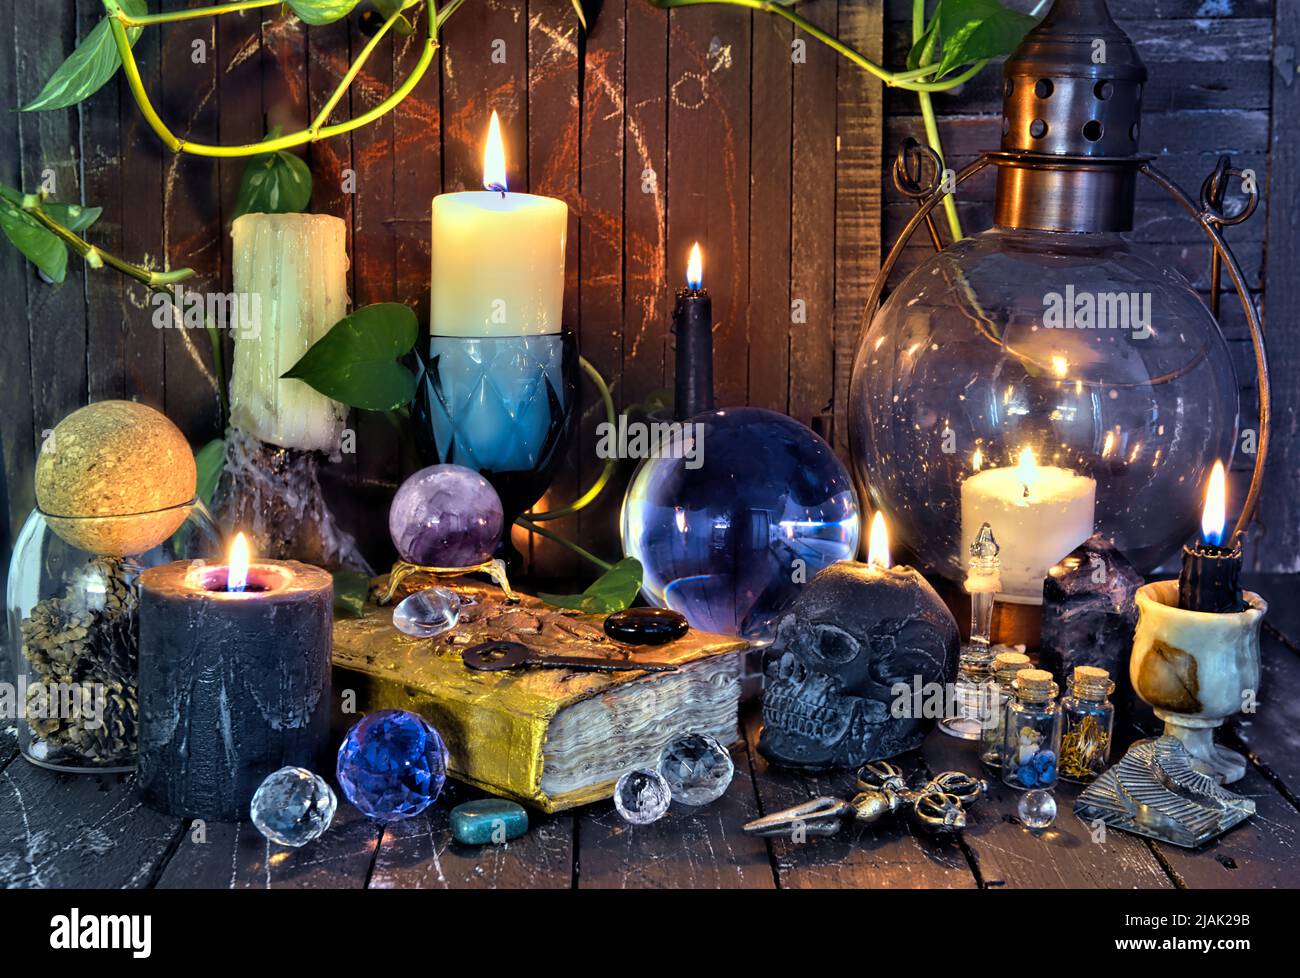 Wicca, la vie ésotérique et occulte avec des objets magiques vintage sur l'autel de la table de sorcière pour les rituels mystiques et la narration de fortune. Halloween et fête gothique Banque D'Images